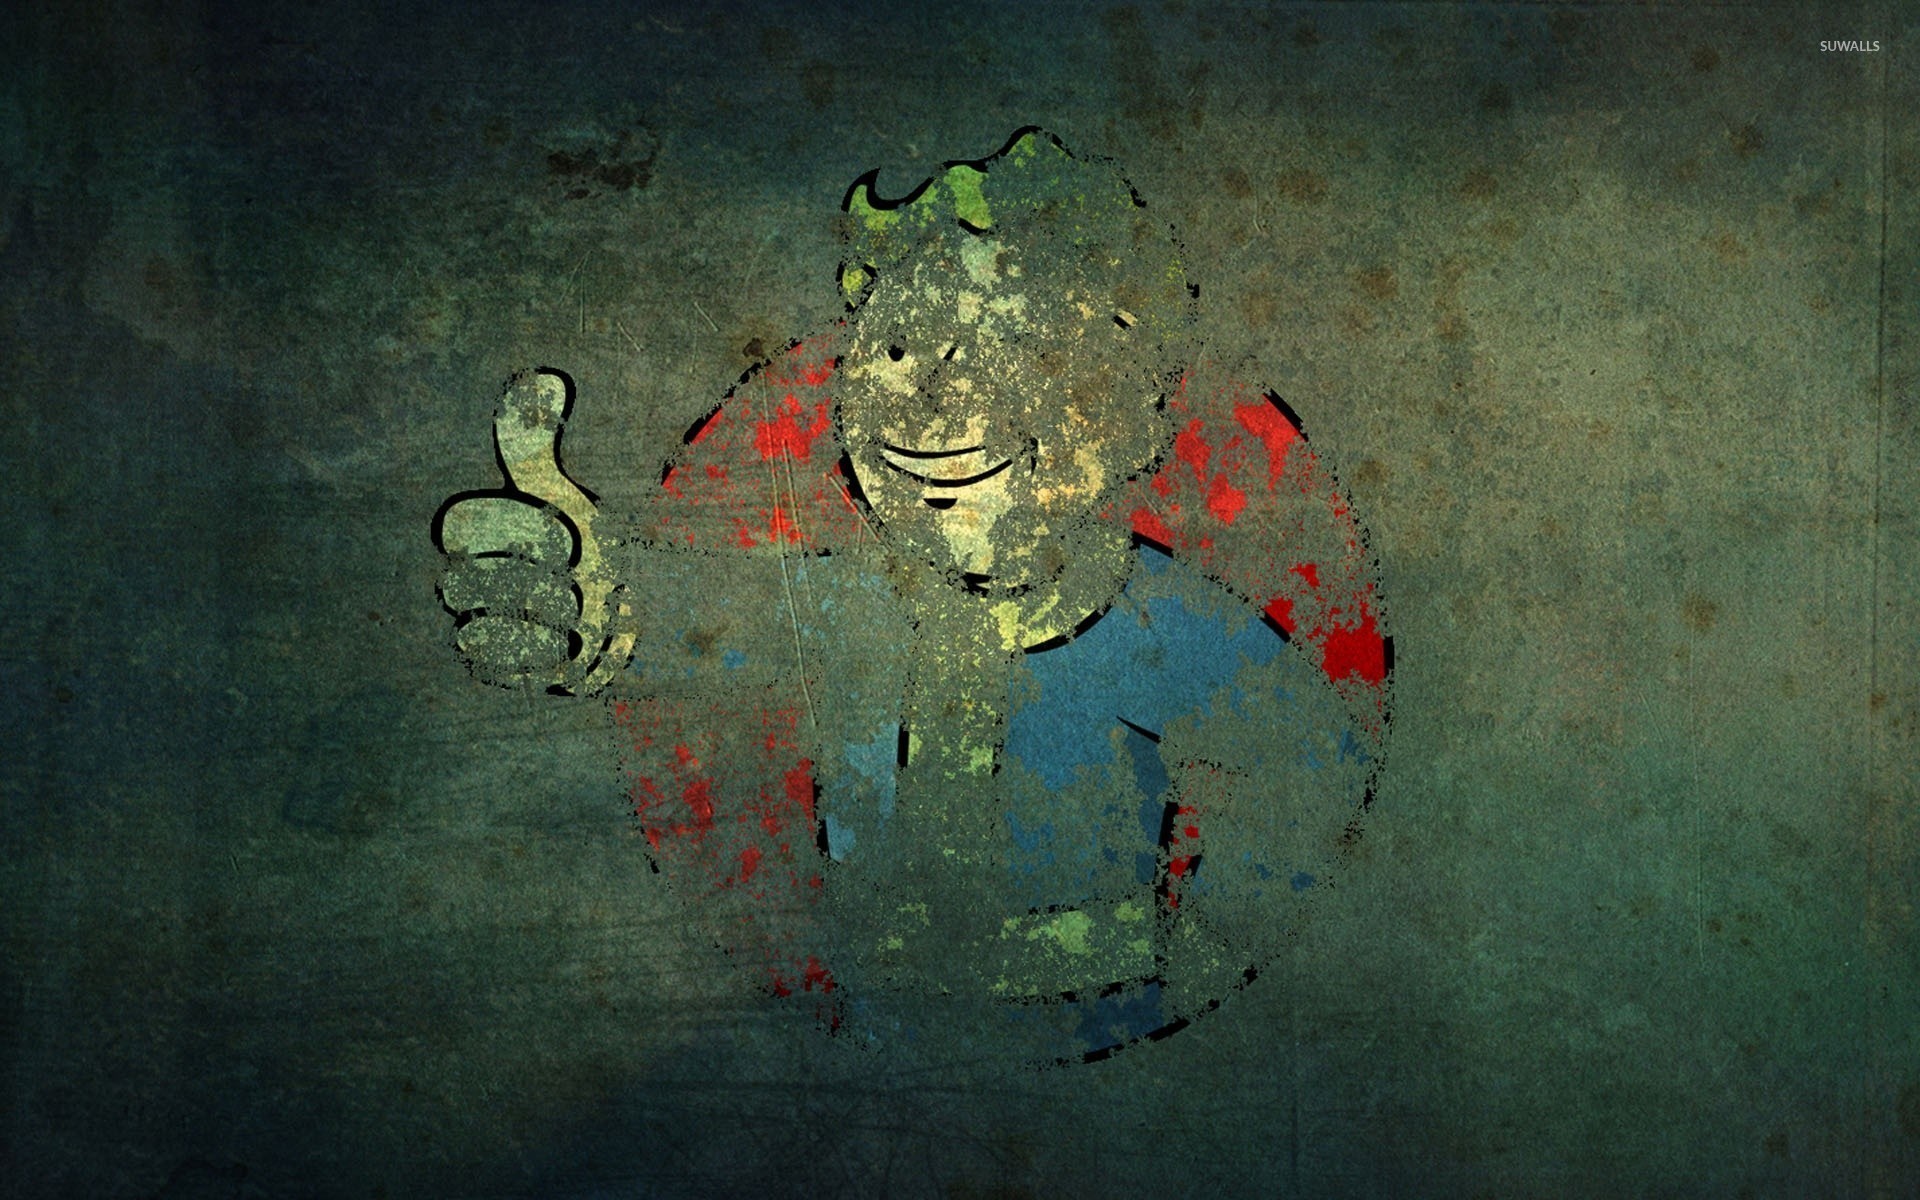 1920x1200 Vault Boy graffiti on an old wall - Fallout wallpaper  jpg